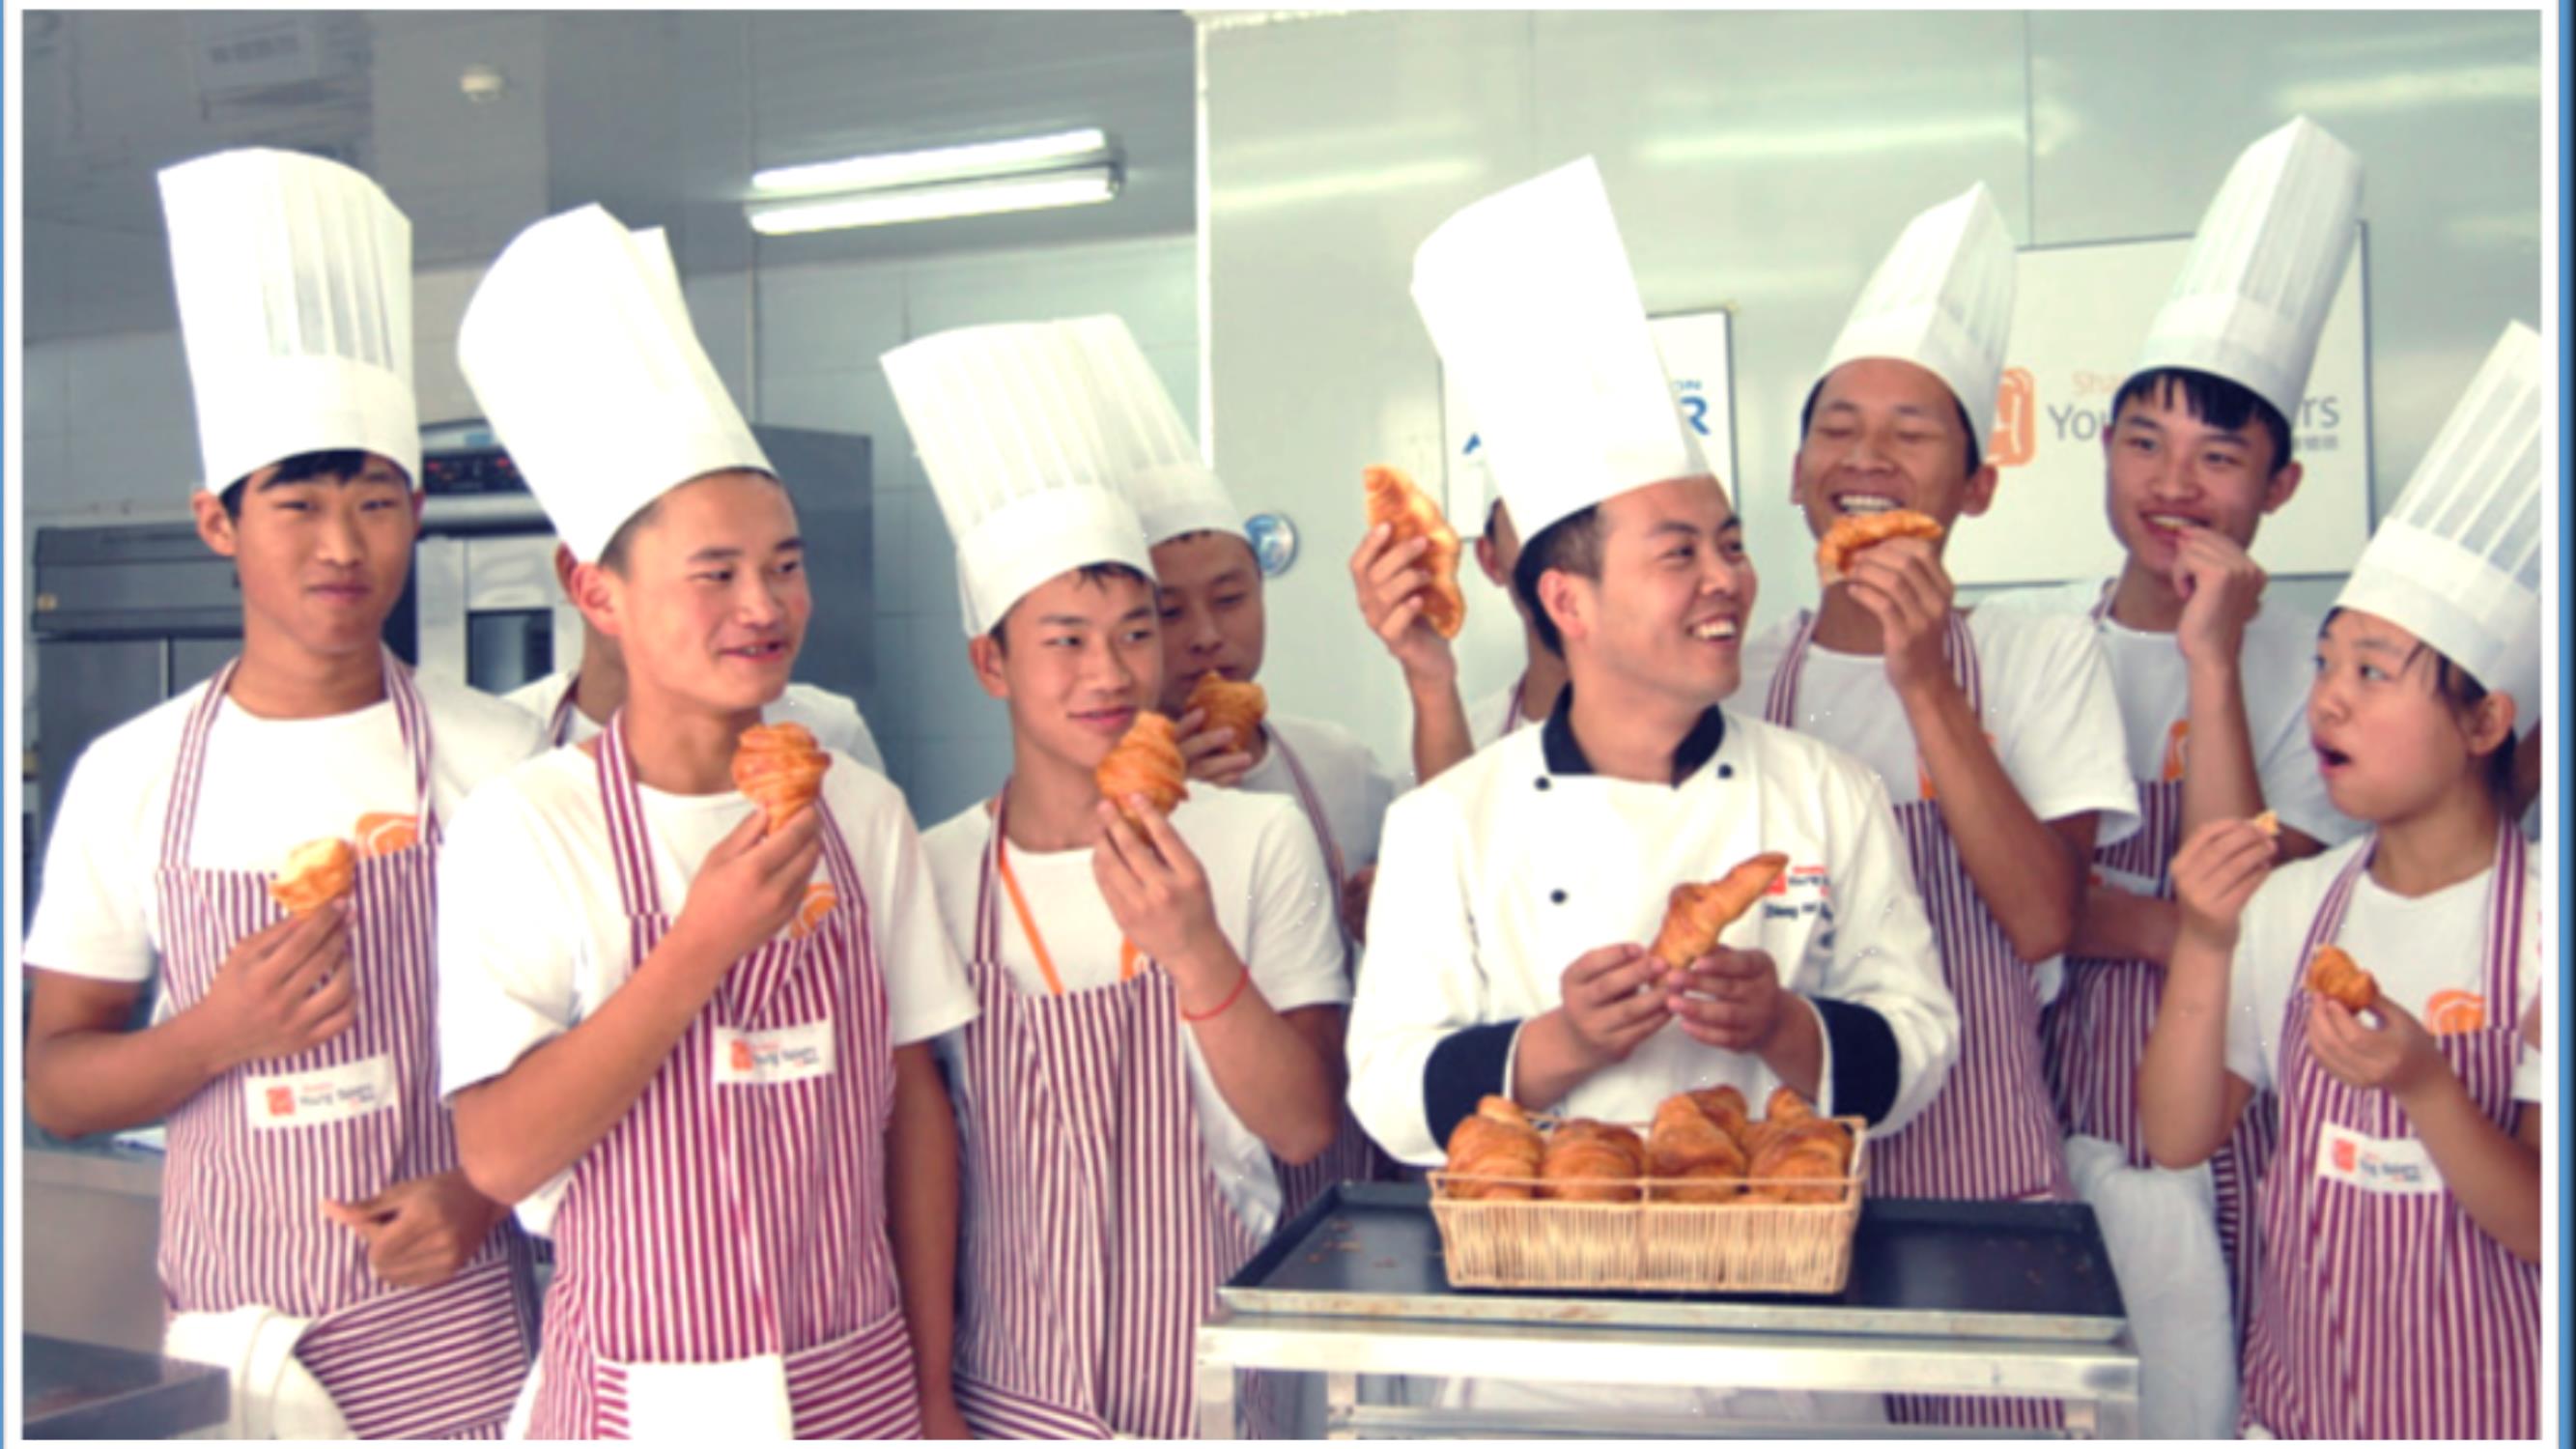 体 验 烘 焙, 助 力 慈 善 We are a charity program that provides a one-year free training in French bakery and pastry to marginalised Chinese youth aged 17 to 23, enabling them to find qualified jobs and lead